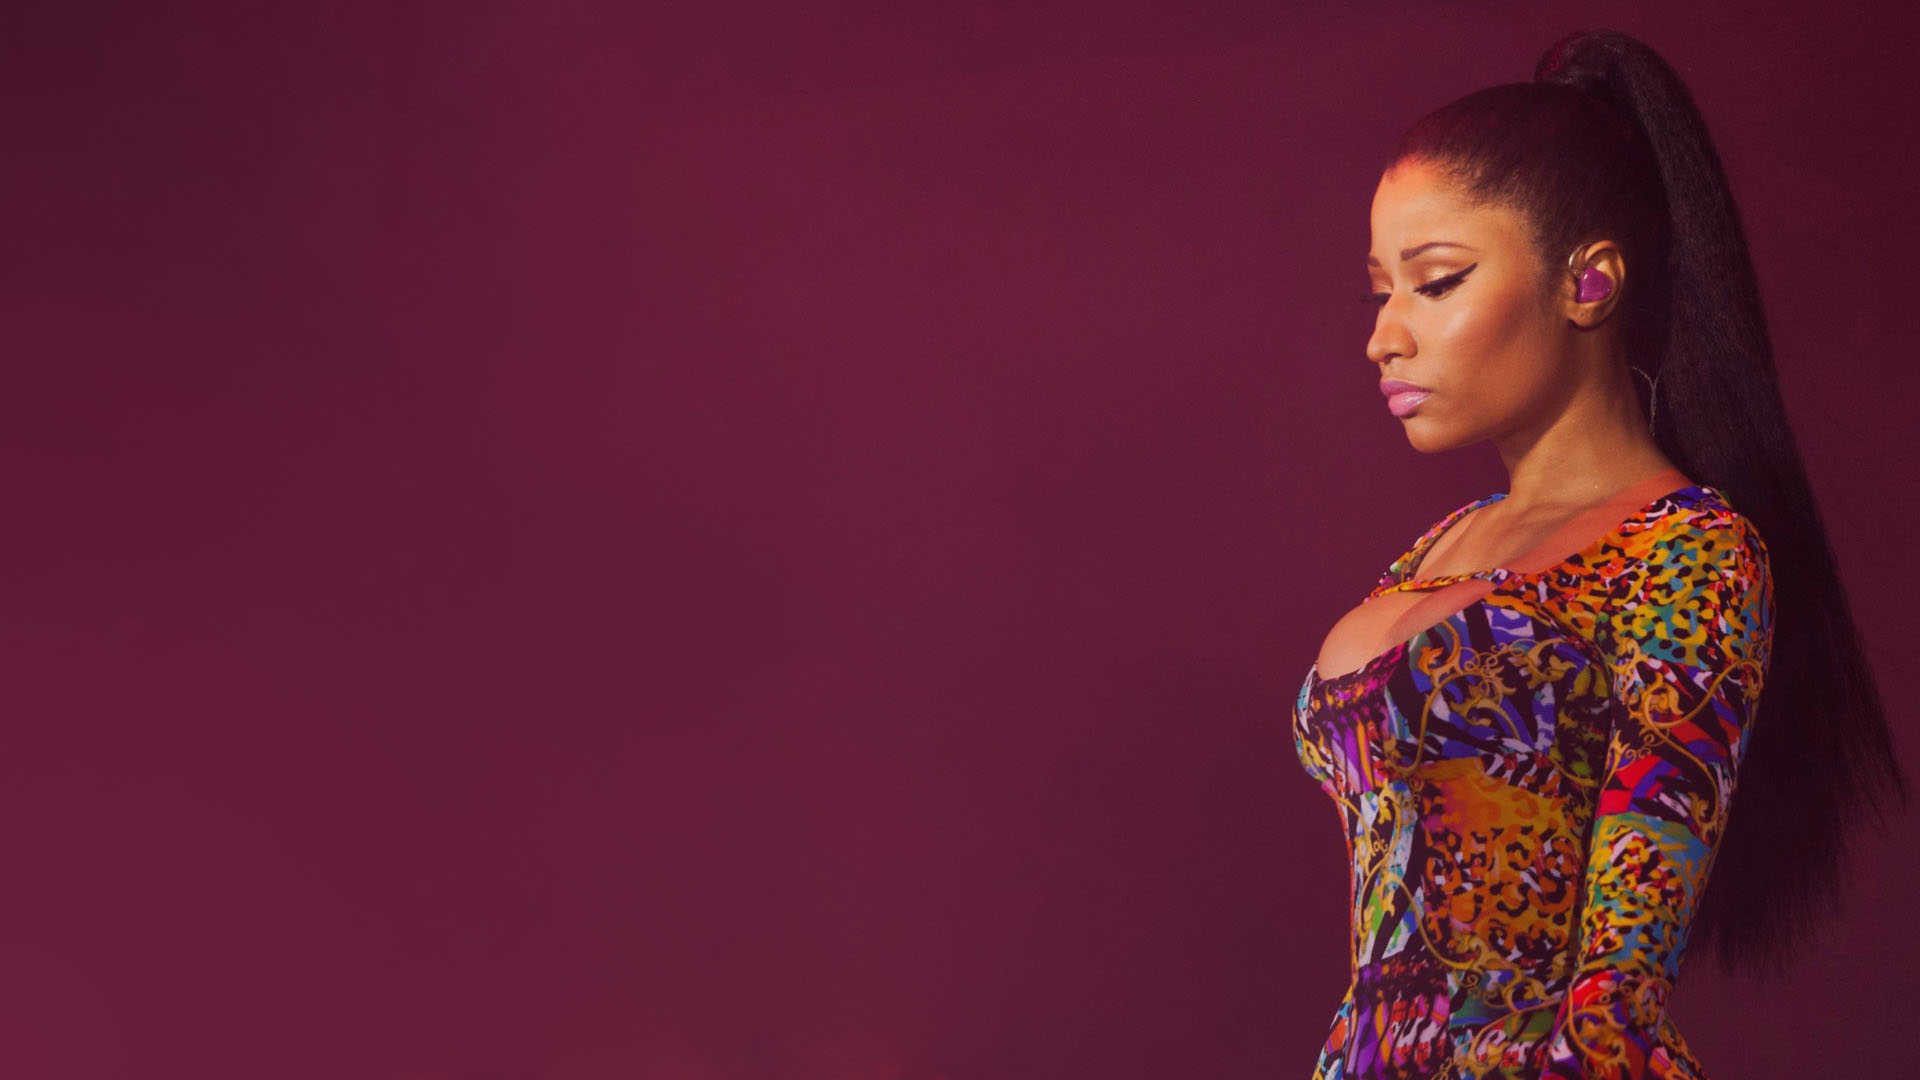 Nicki Minaj 4K Wallpapers